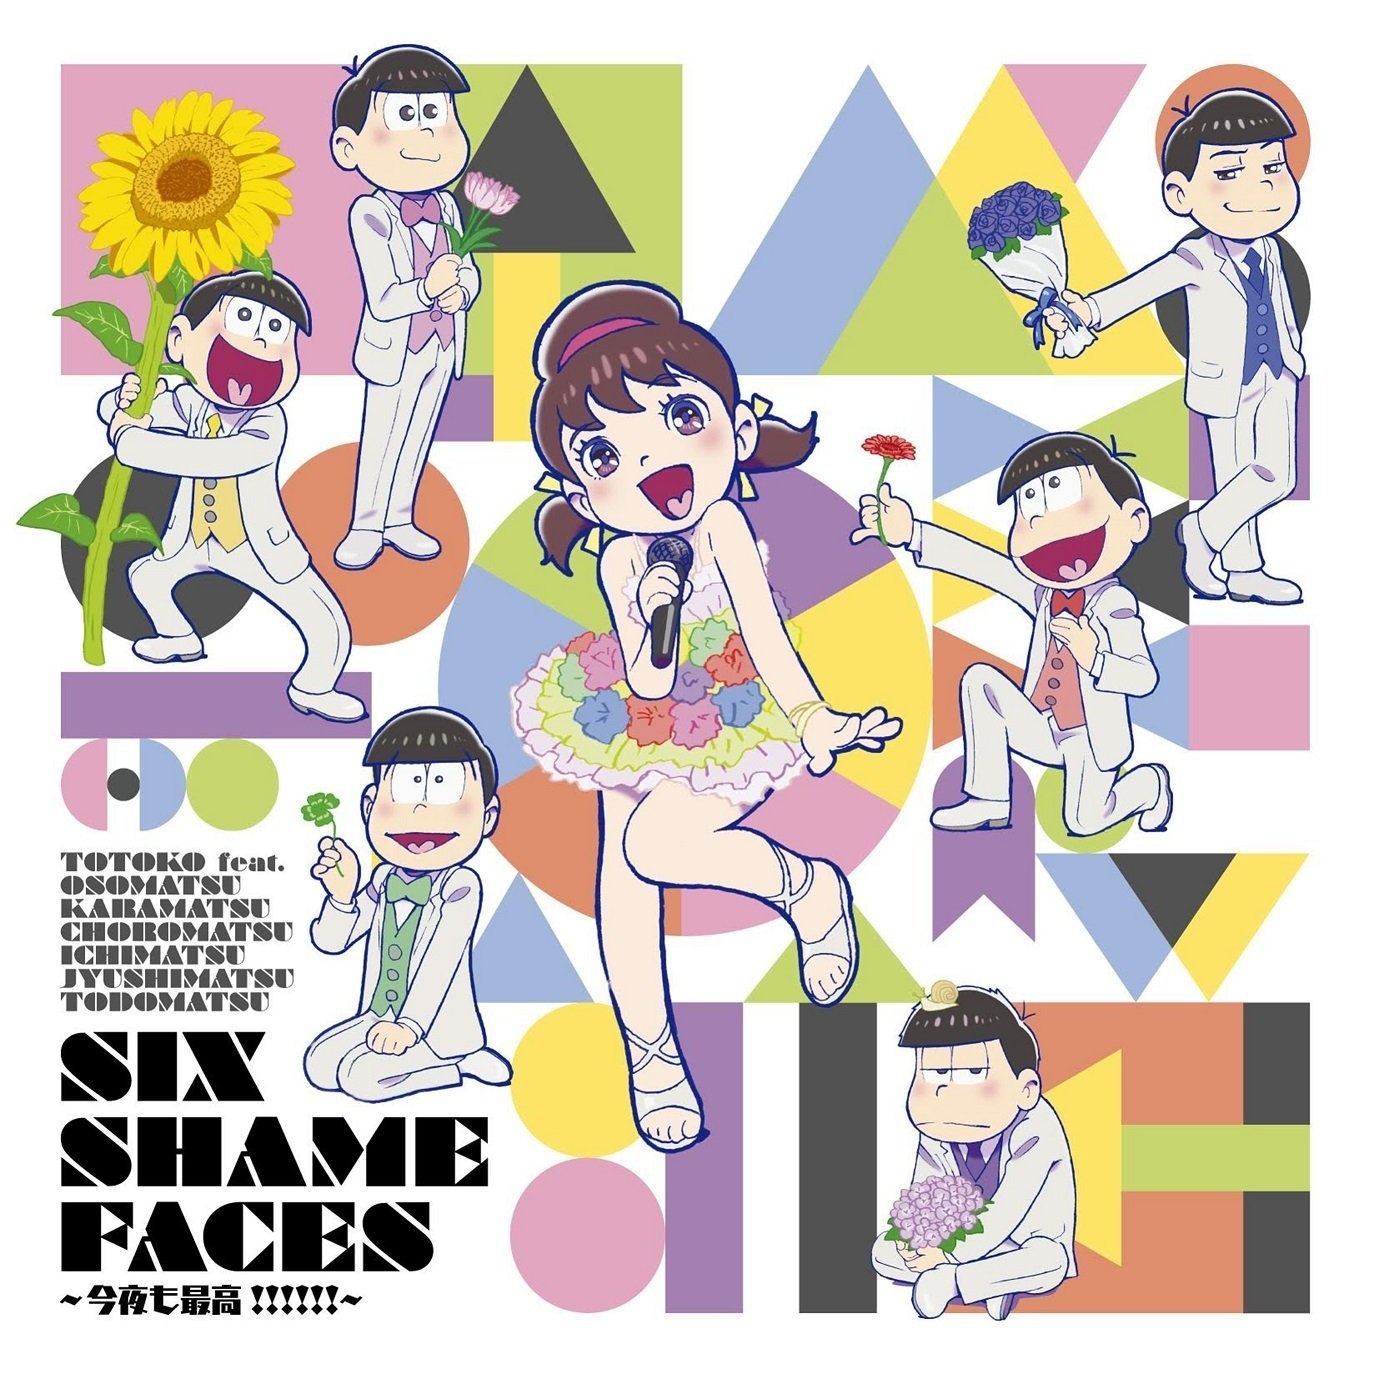 SIX SHAME FACES jin ye zui gao!!!!!! TECHNOBOYS feat. Yumi Kawamura ver.